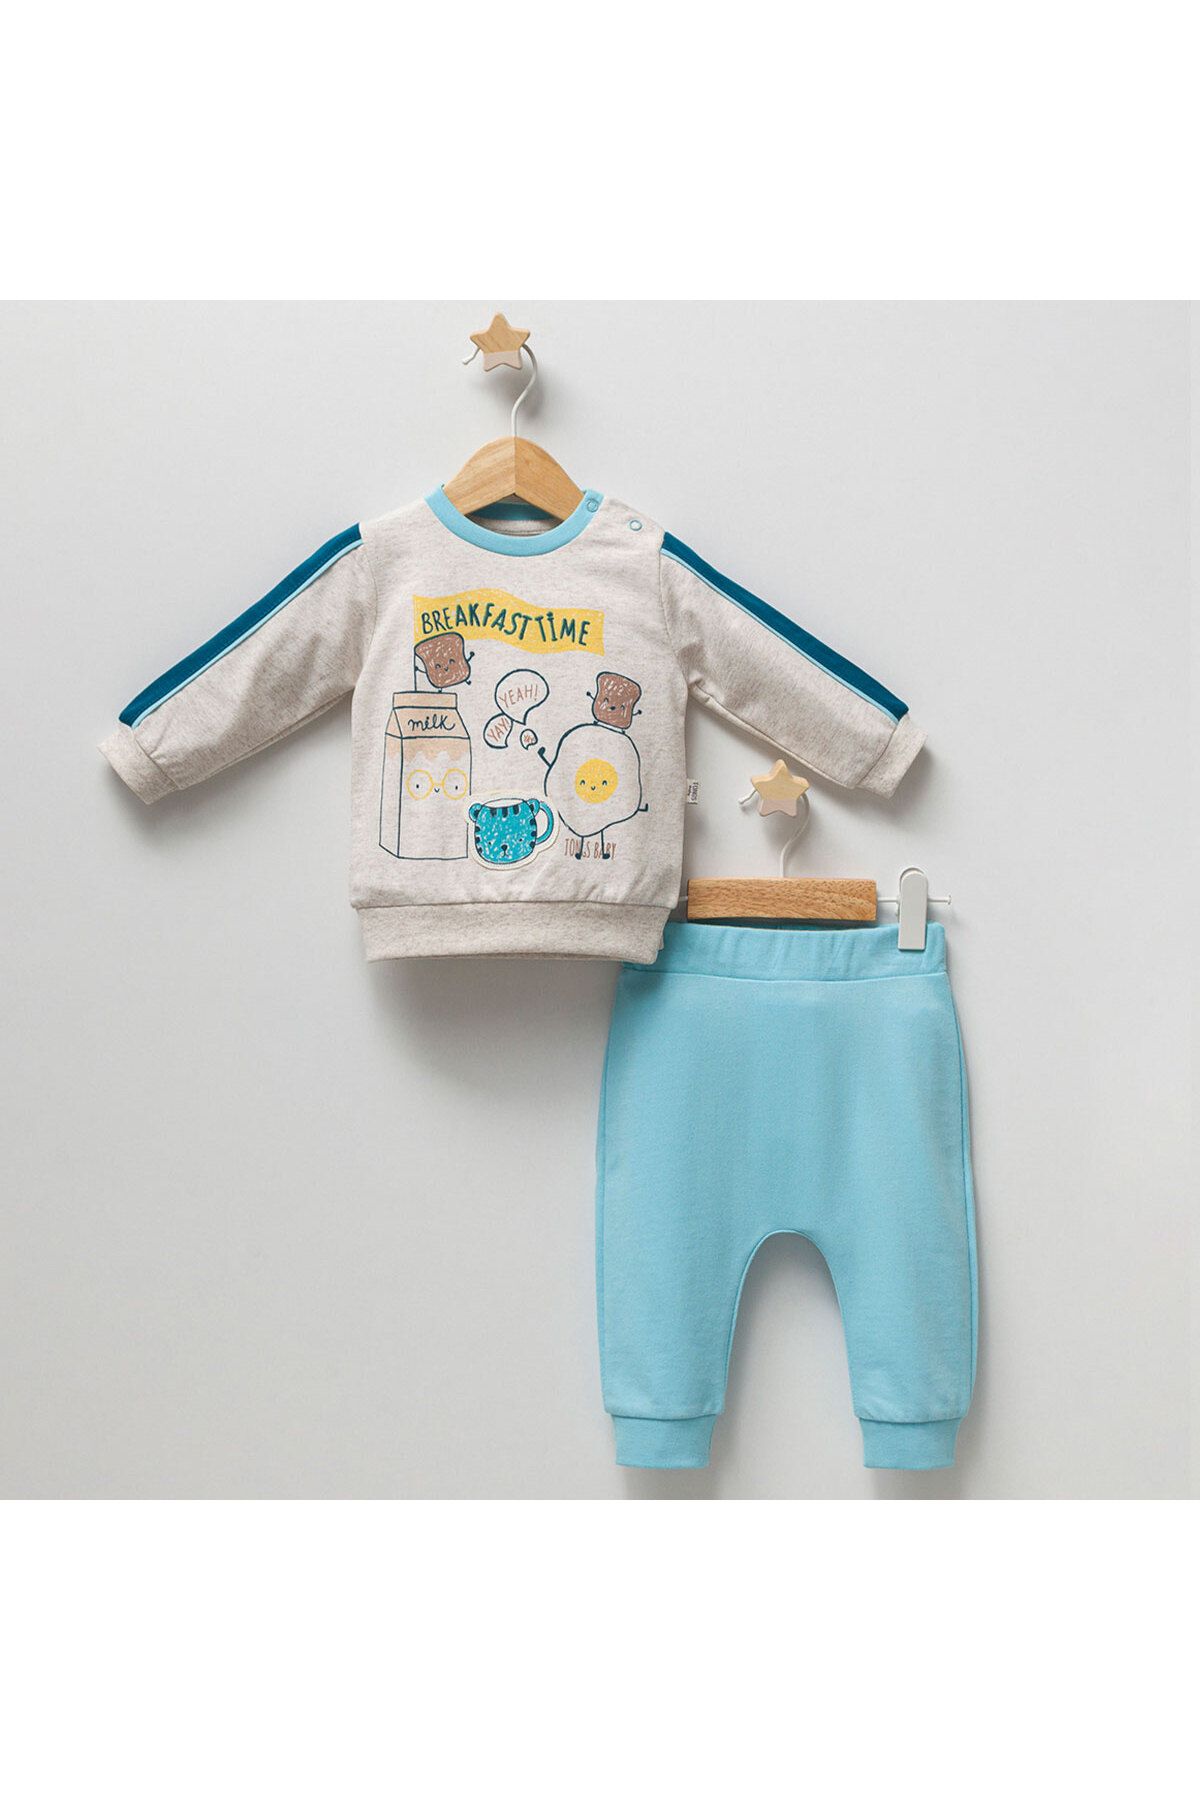 DIDuStore Sevimli Yiyecek Karakterli Sweatshirt ve Pantolonlu Erkek Bebek Giyim Takımı